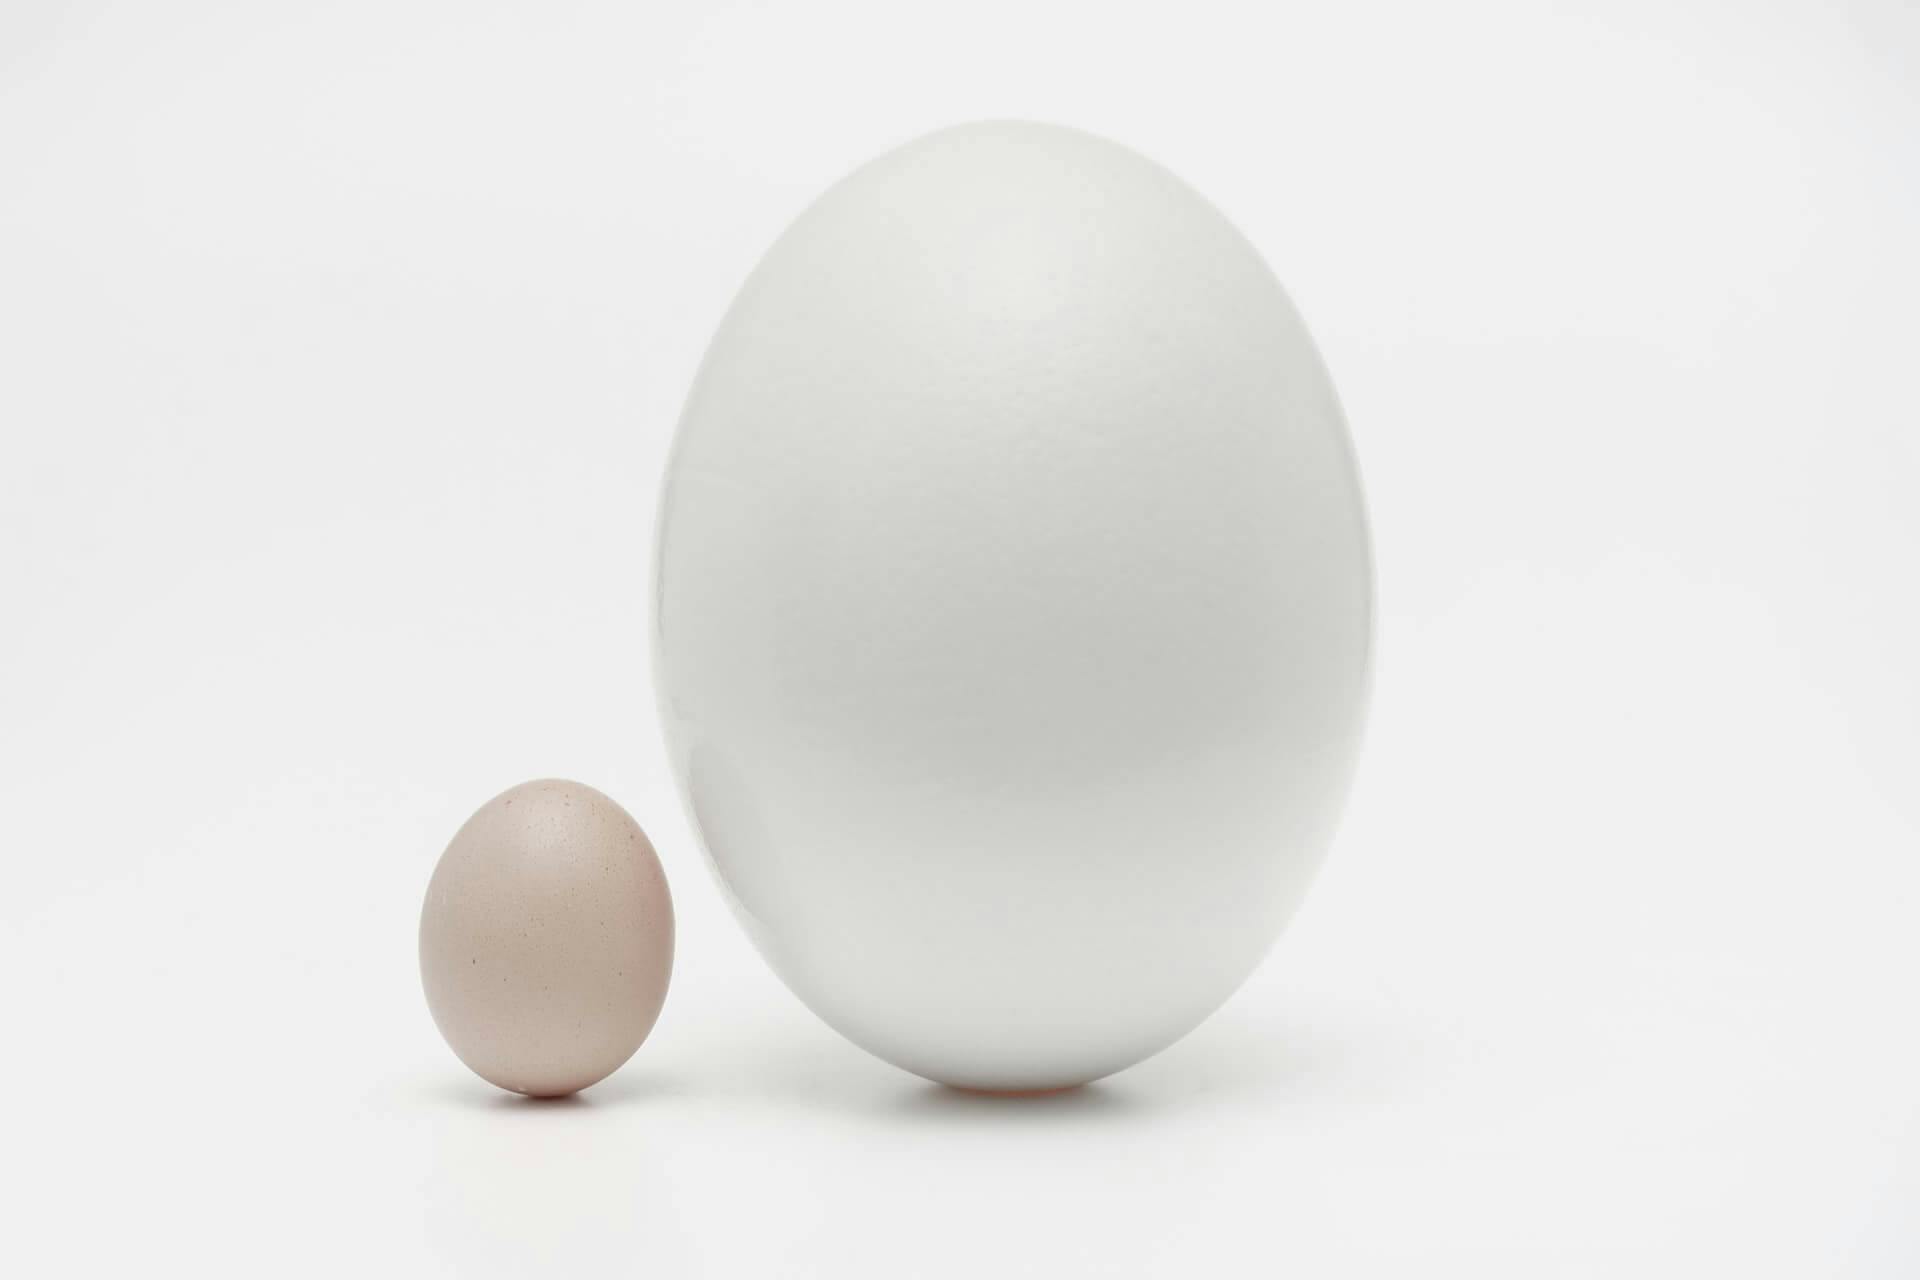 Um ovo branco grande ao lado de um ovo marrom pequeno, mostrando que tamanho é algo relativo por comparação